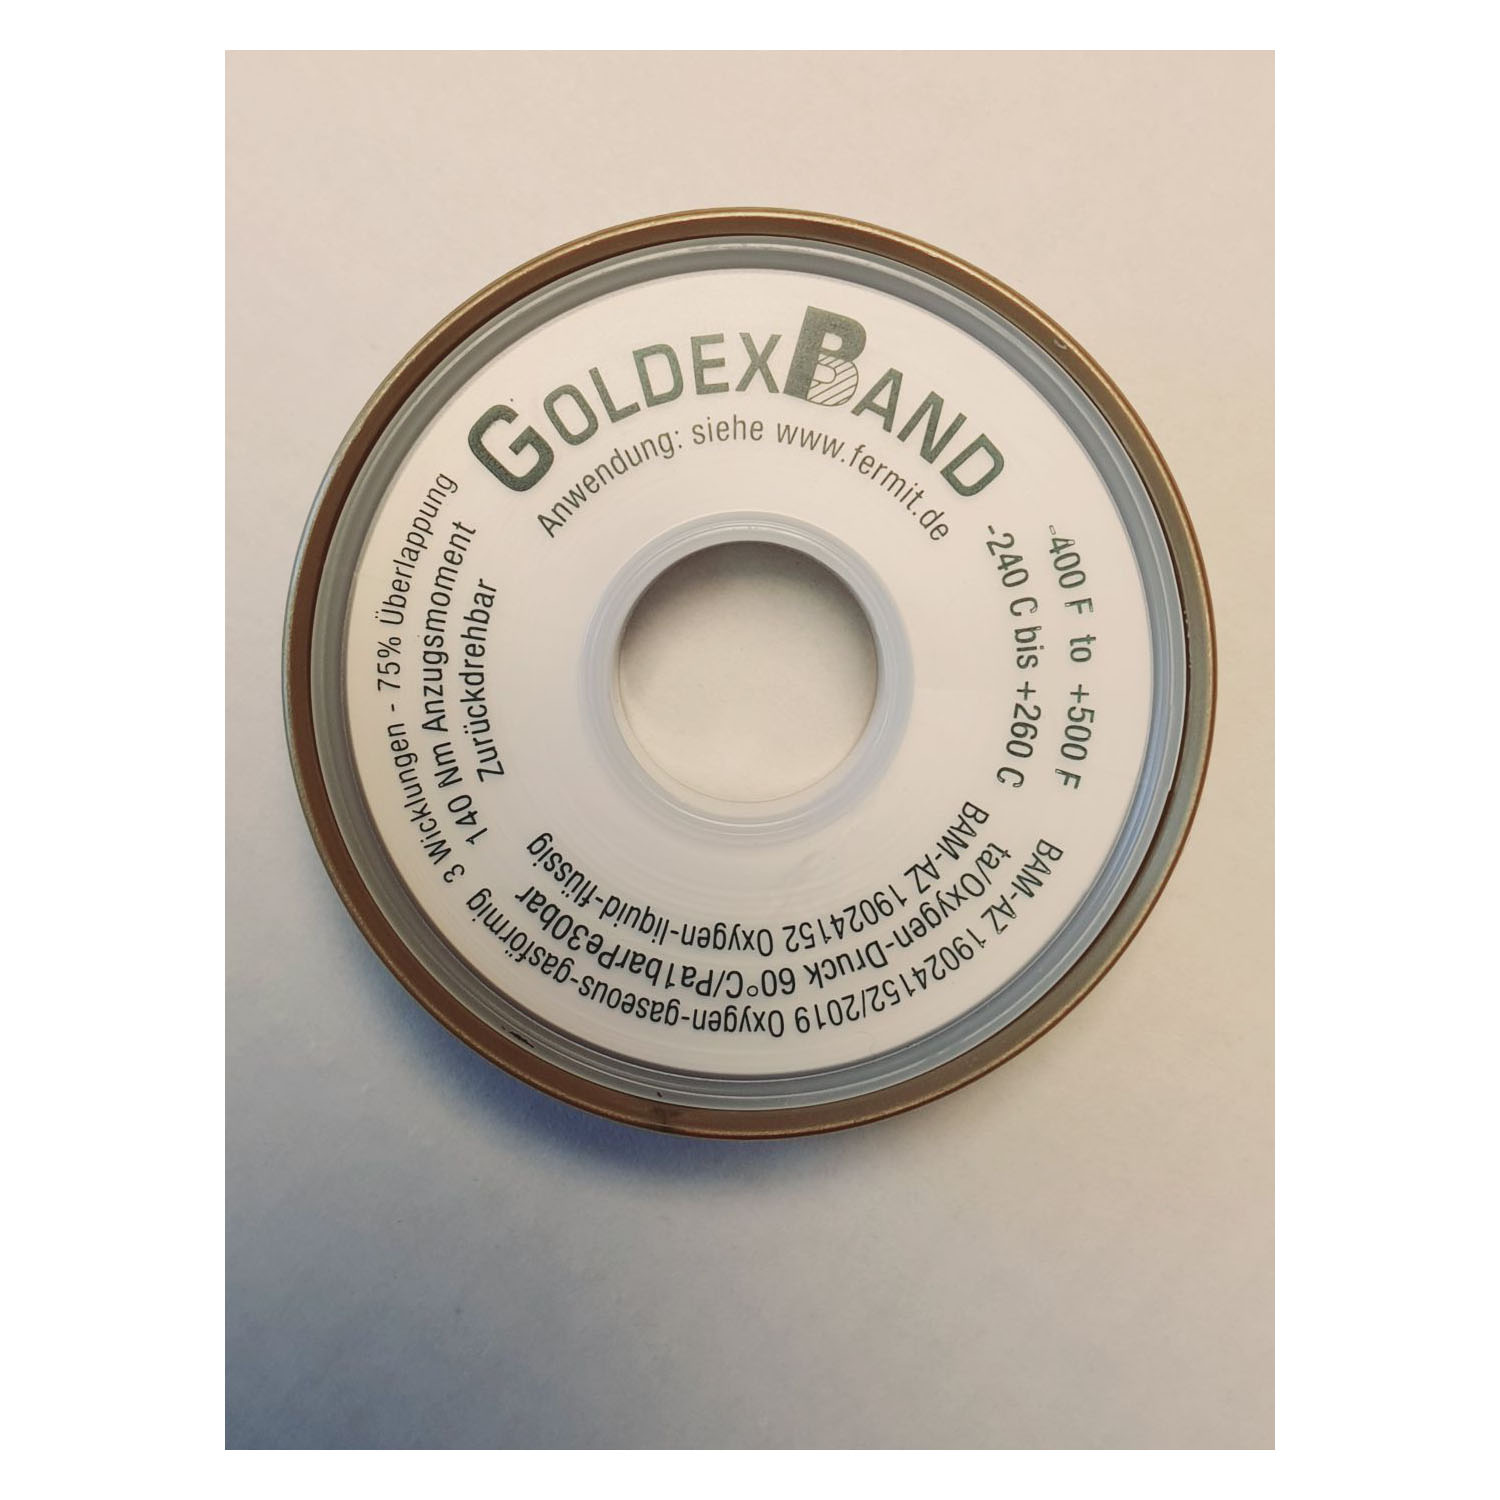 HM 1651 Goldex Band Gewindedichtband 12,2 mm x 0,10 mm x 33 m